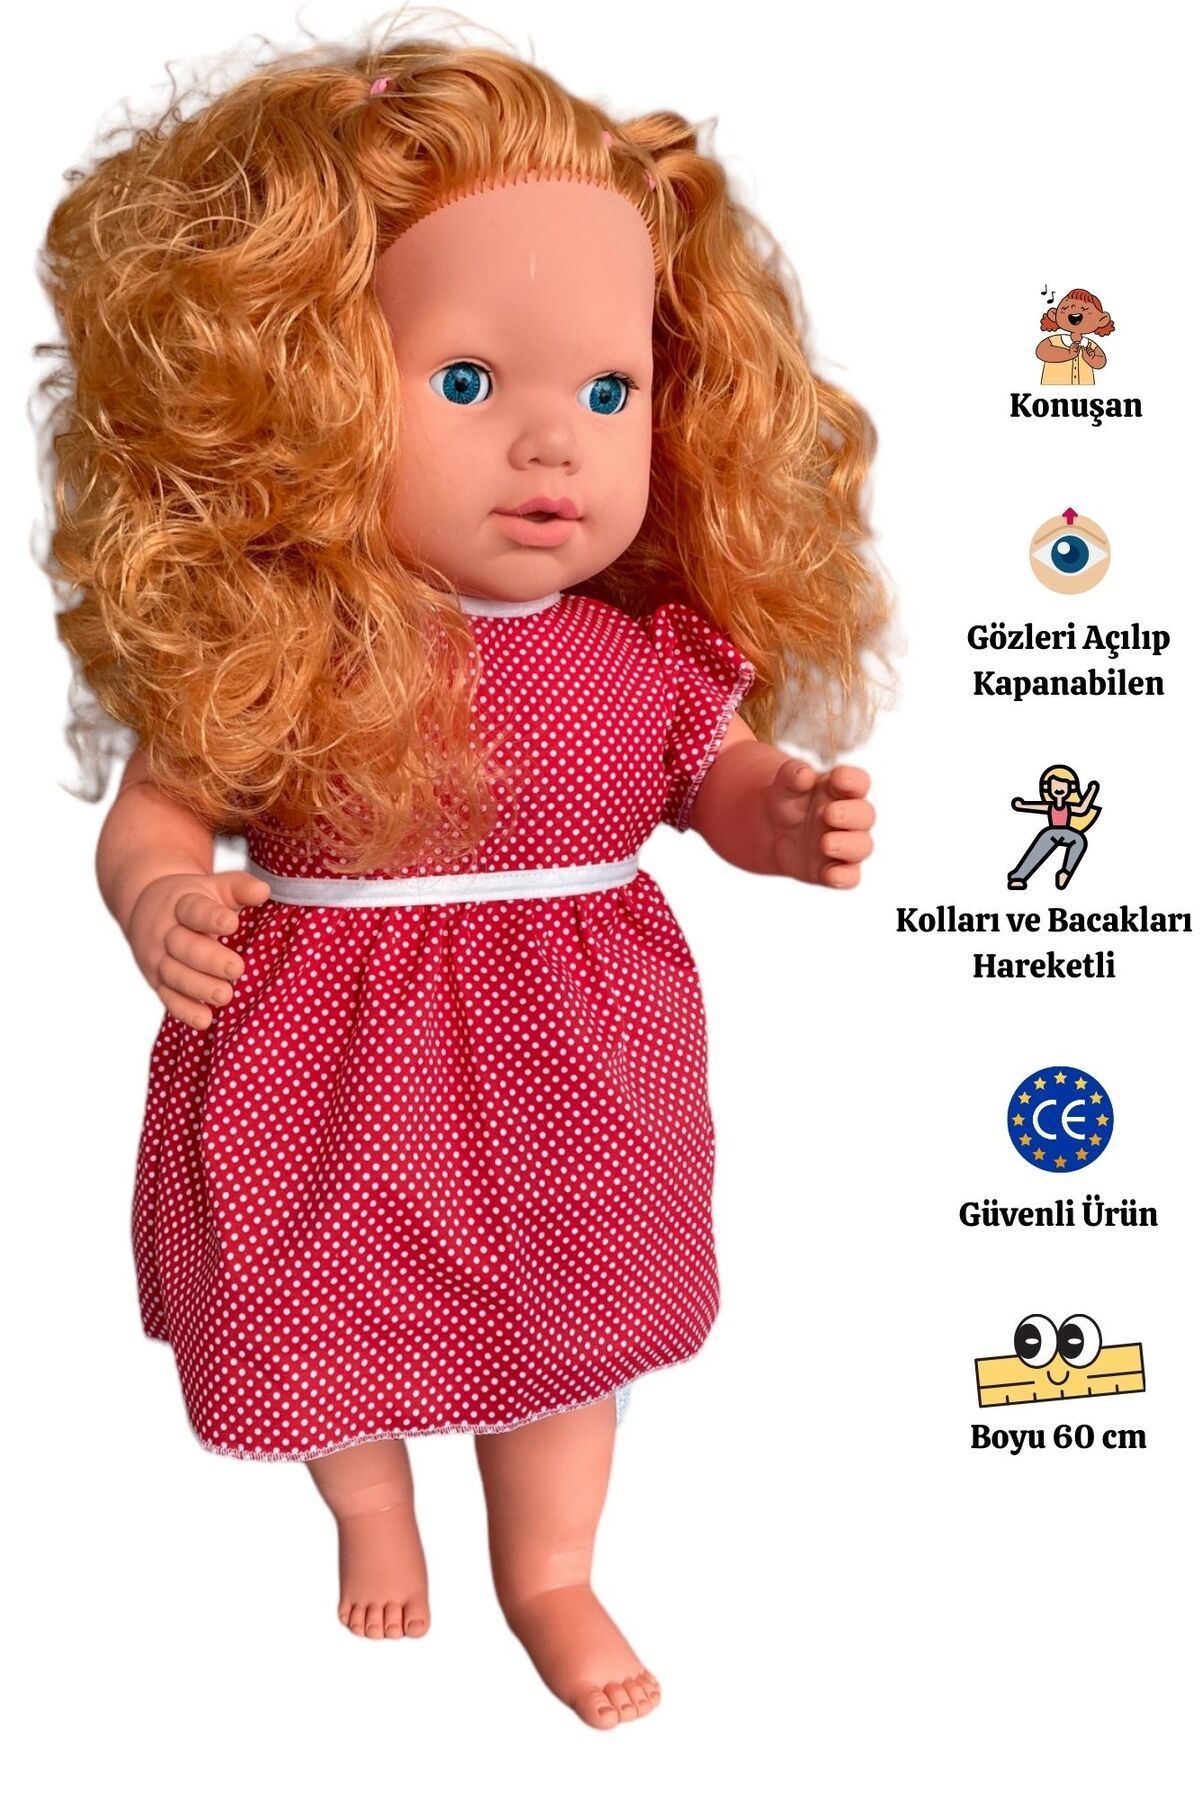 Gamze Oyuncak Büyük Boy Türkçe Konuşan Açık Kahverengi Uzun Saçlı Et Bebek Oyuncak 60 cm